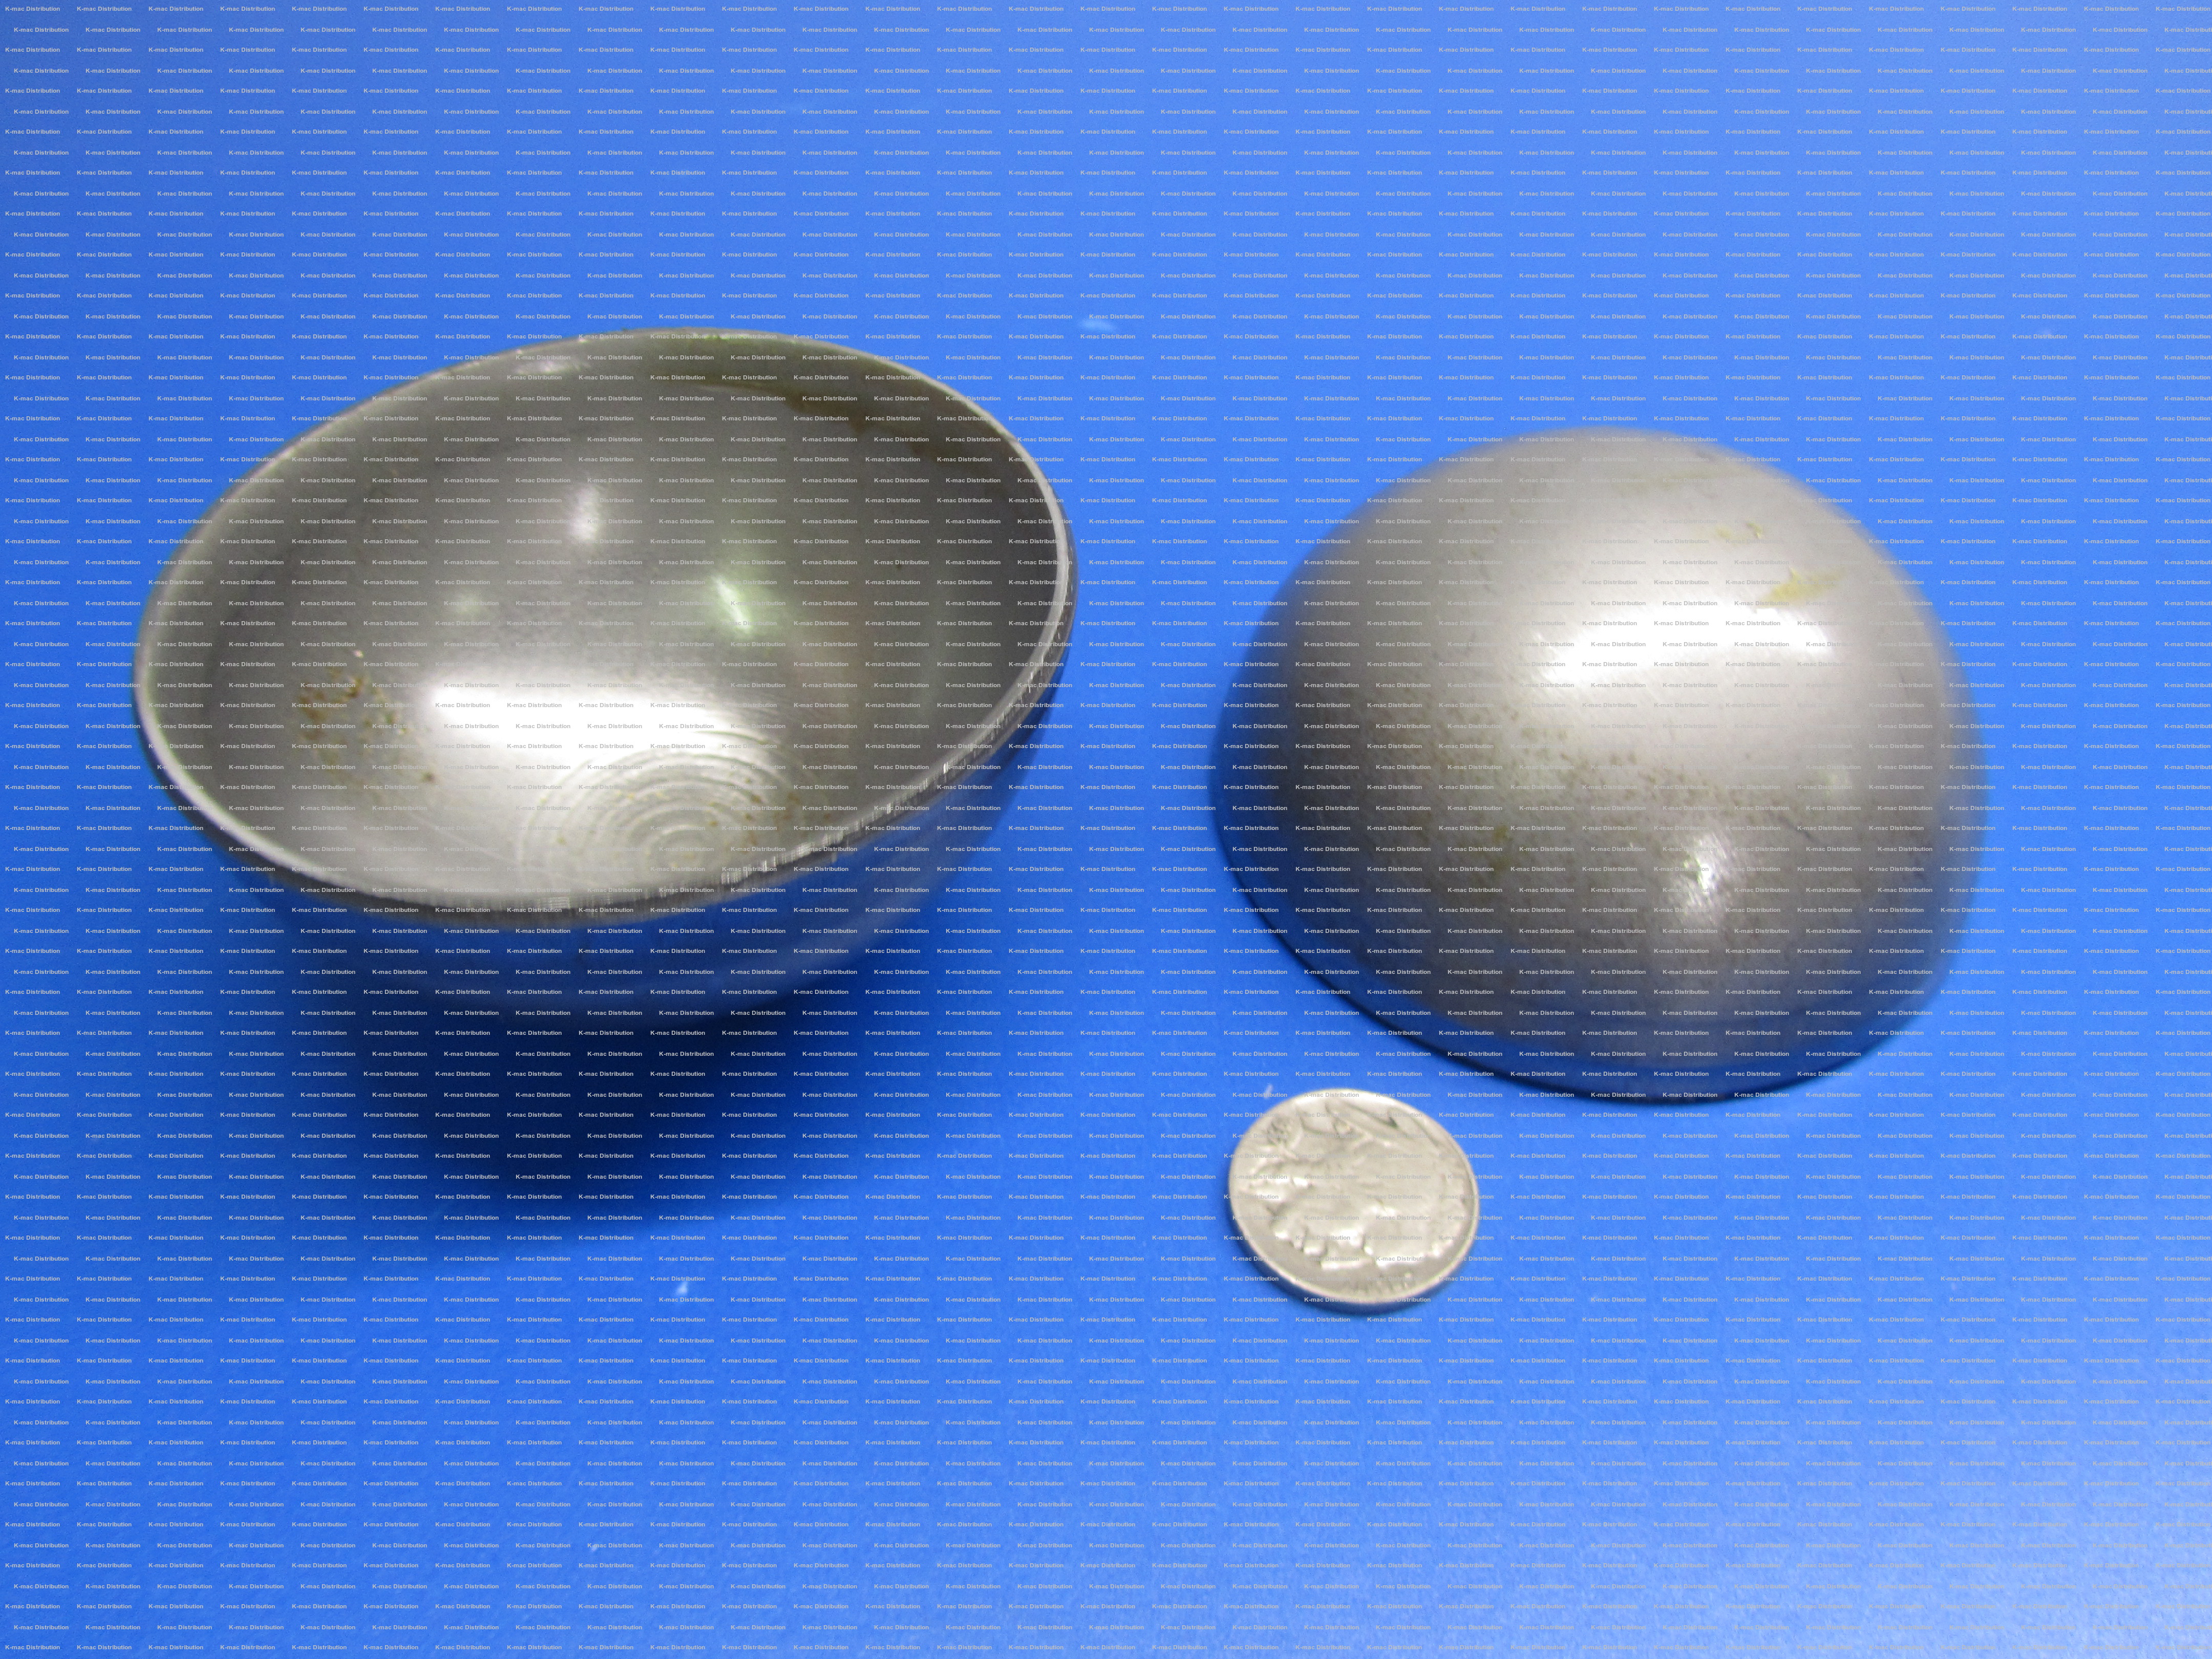 Hot Rolled Steel Half Sphere Balls 8.00" Diameter x 4.0" Height